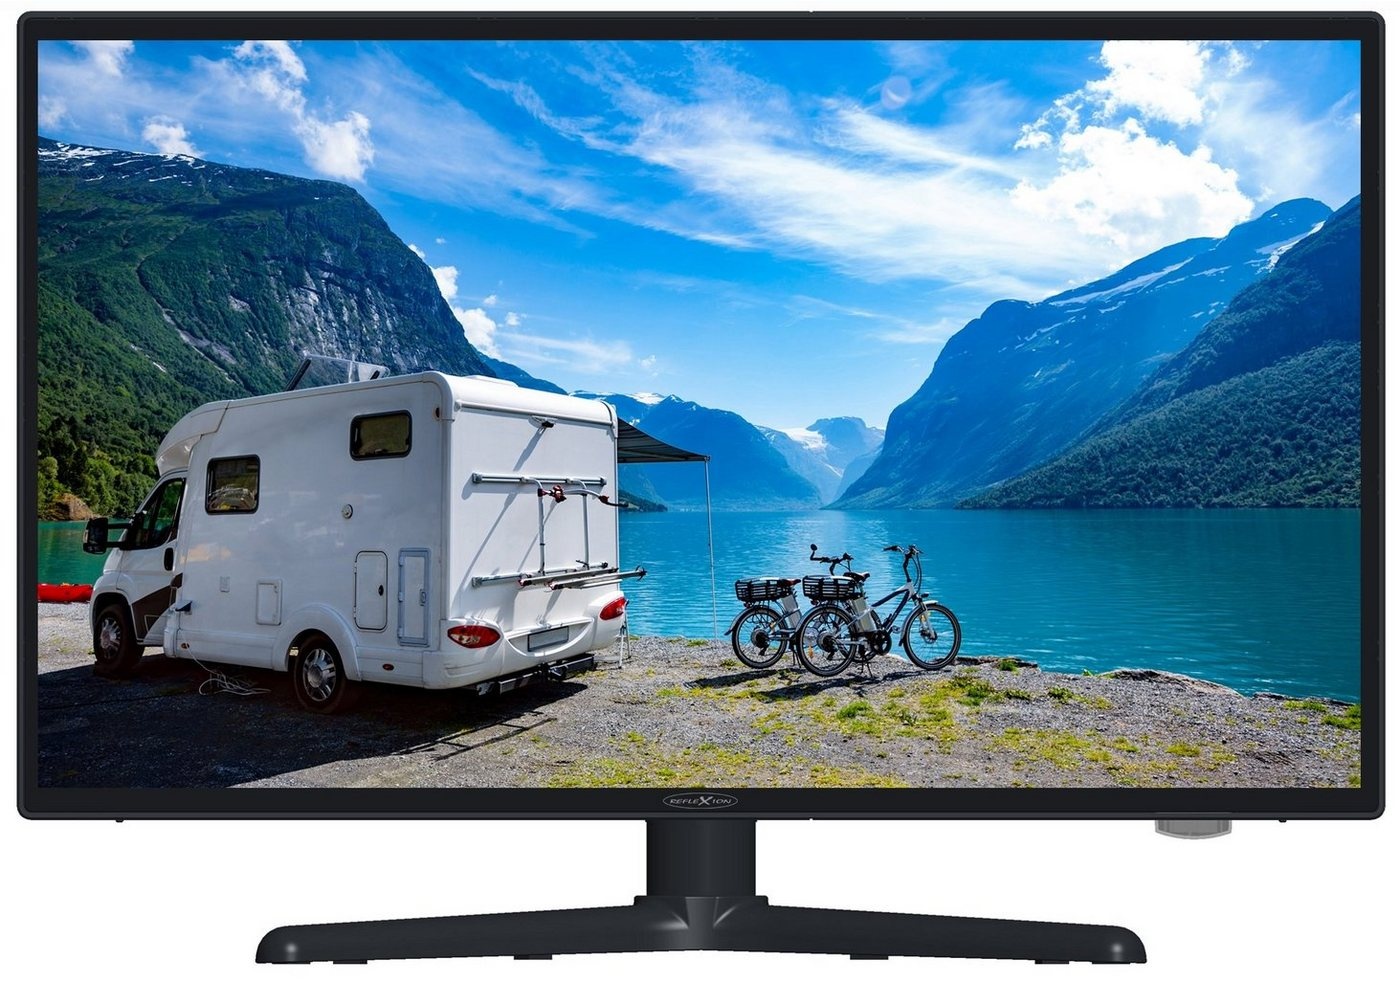 Reflexion LEDW24i+ LED-Fernseher (60,00 cm/24 Zoll, Full HD, Smart-TV, DC IN 12 Volt / 24 Volt, Netzteil 230 Volt, Fernseher für Wohnwagen, Wohnmobil, Camping, Caravan) schwarz